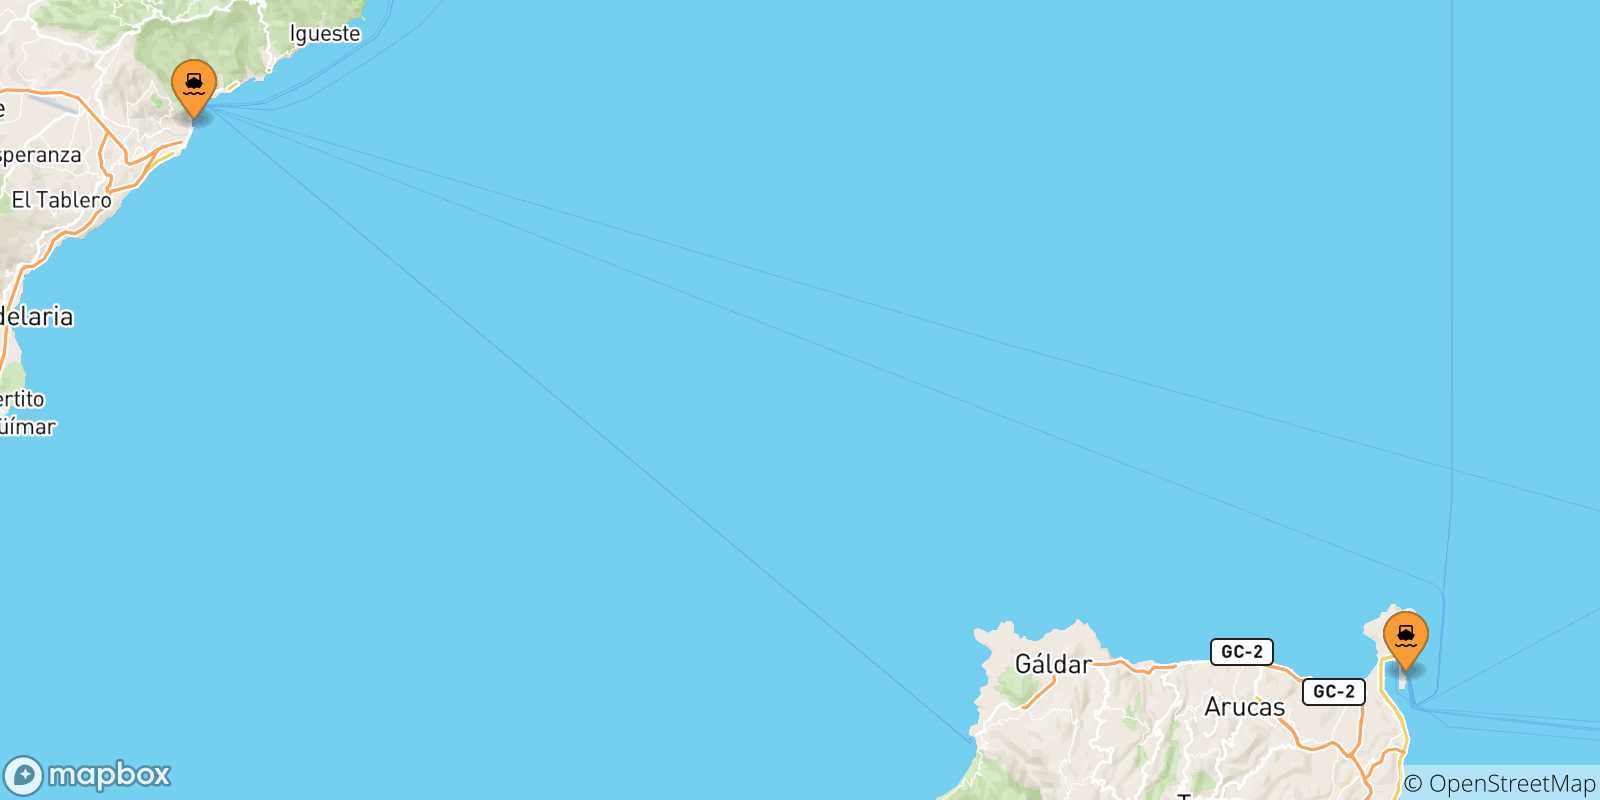 Mappa delle possibili rotte tra le Isole Canarie e Arrecife (Lanzarote)